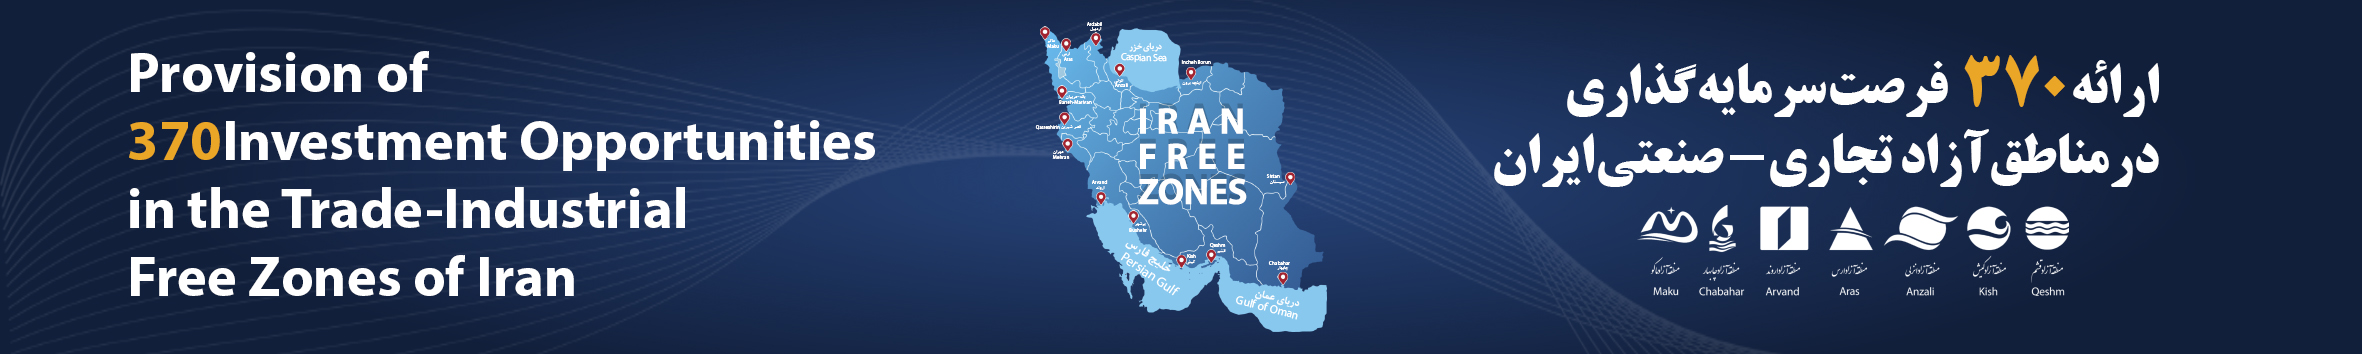 ارائه 370 فرصت سرمایه گذاری در مناطق آزاد تجاری-صنعتی ایران